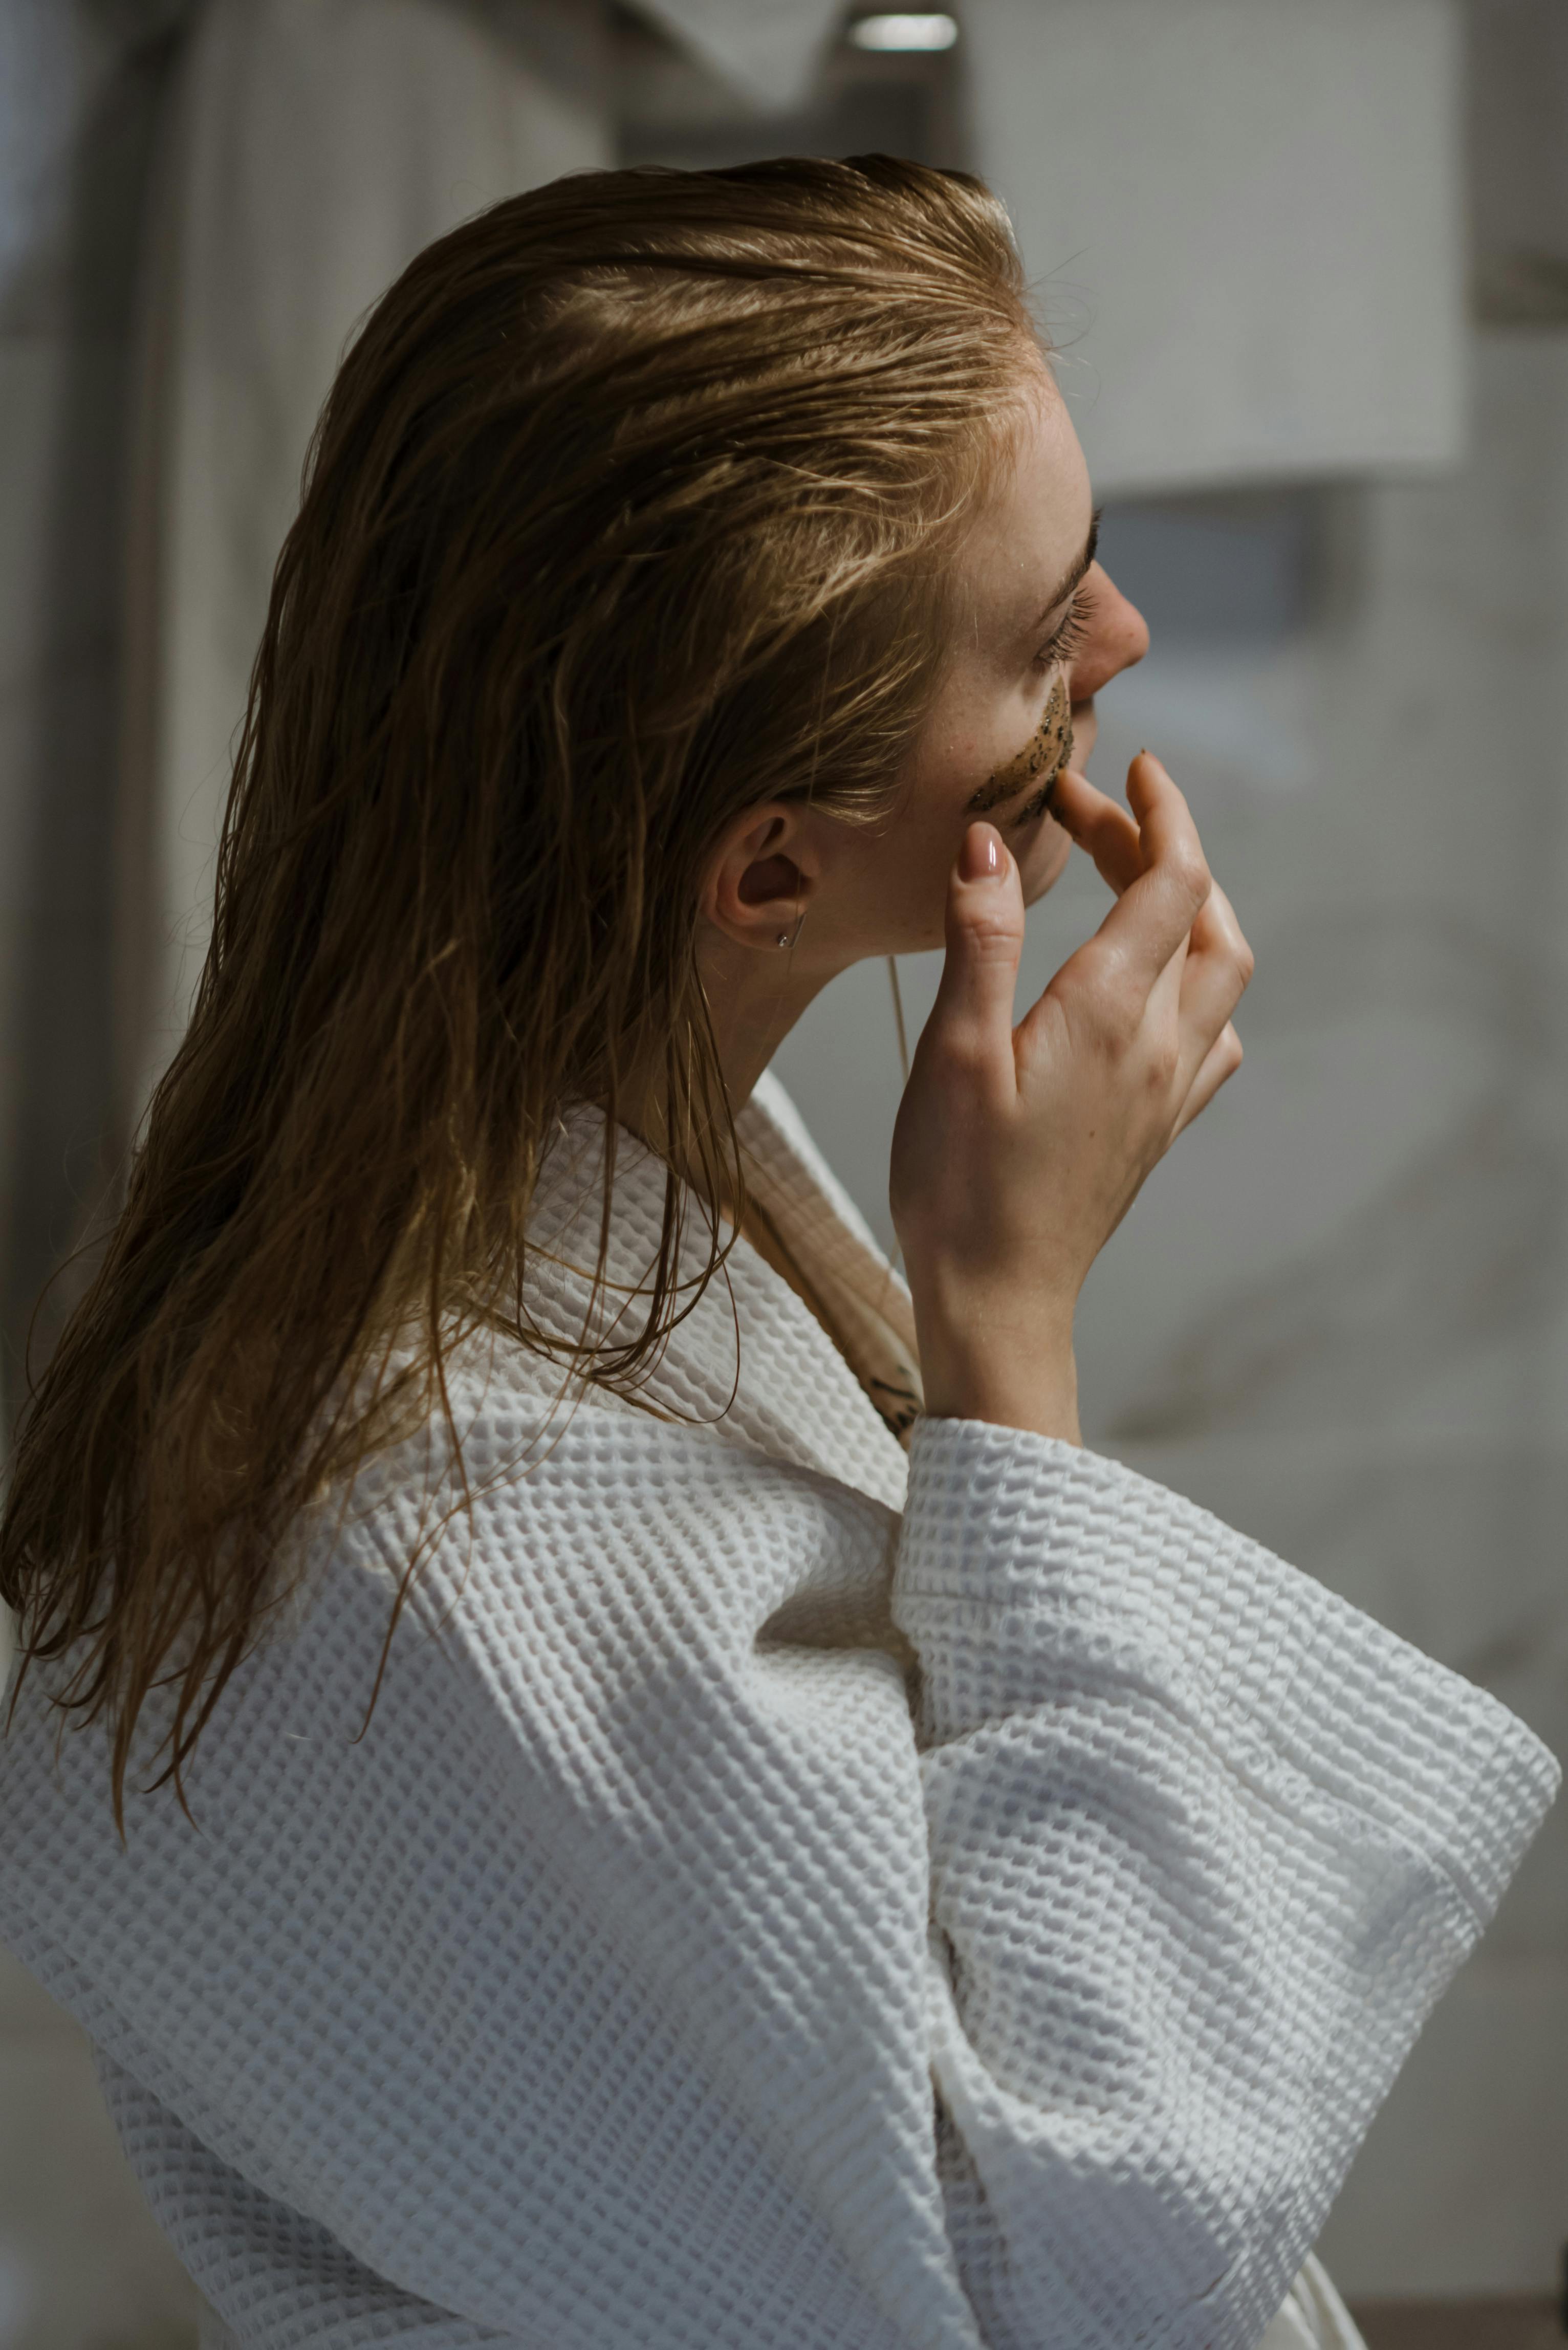 Une femme appliquant des produits pour le visage après avoir pris une douche | Source : Pexels